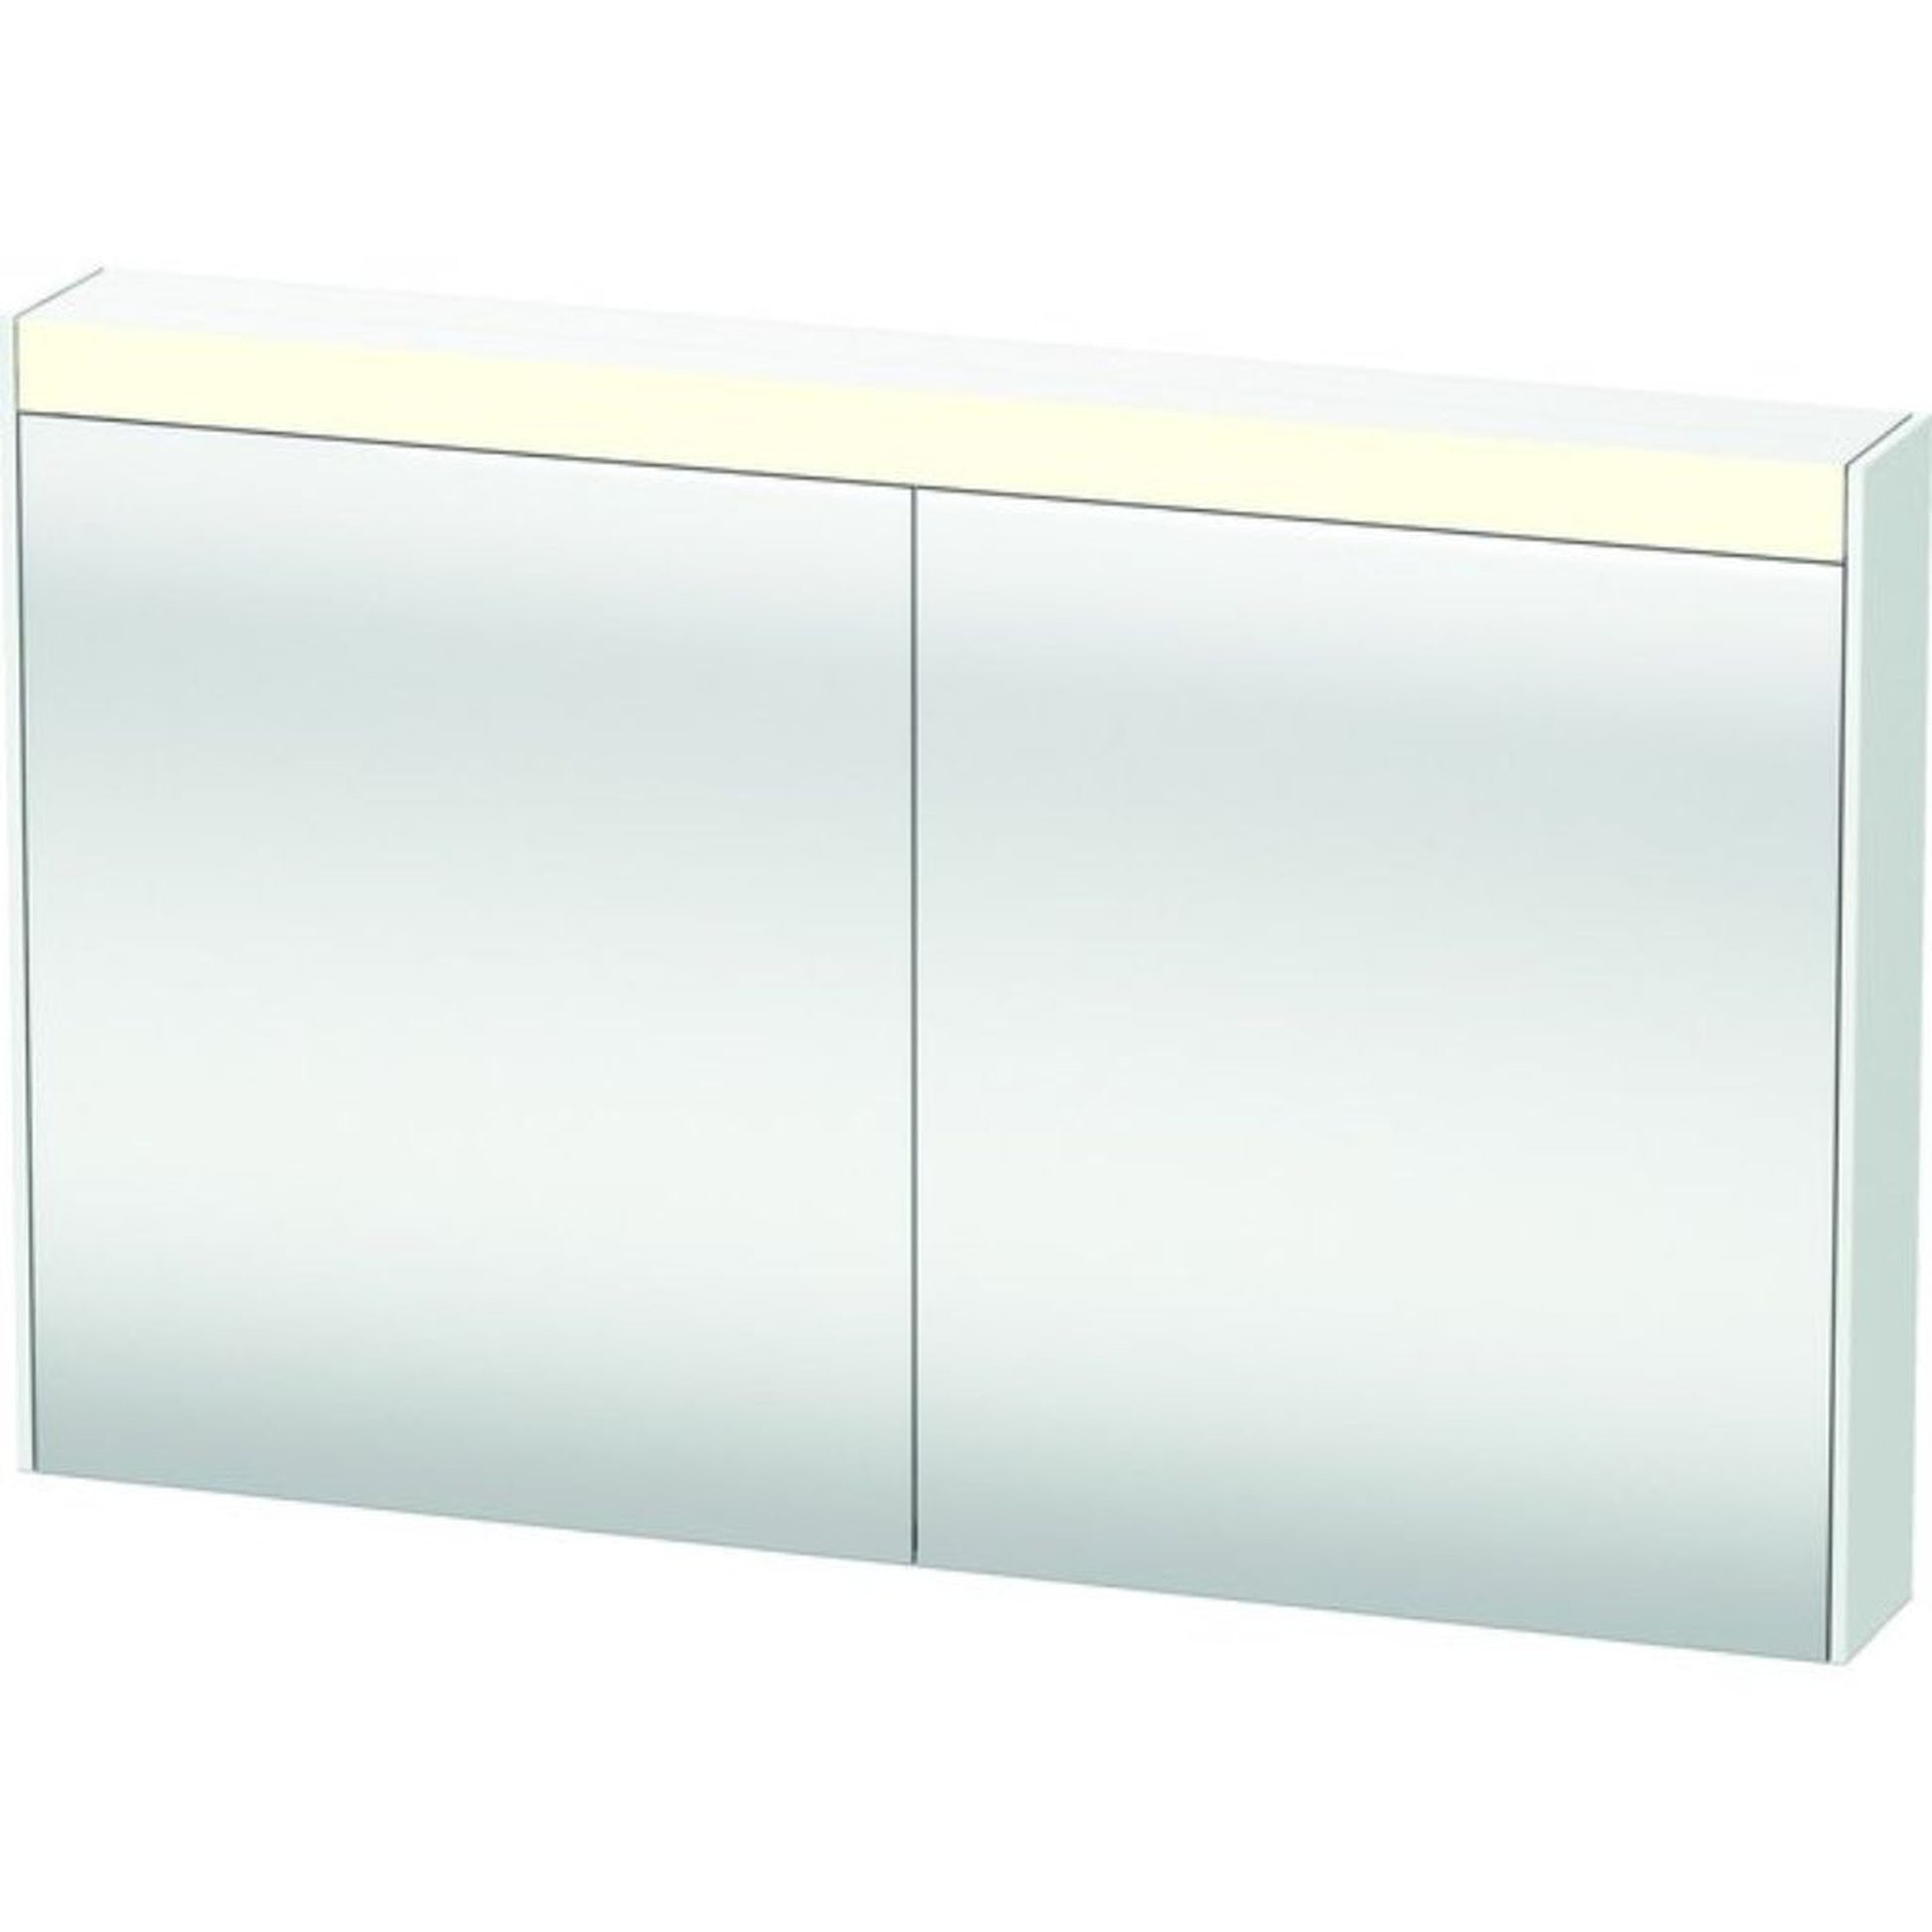 Duravit Brioso 48" x 30" x 6" Mirror Cabinet With Lighting White Matt